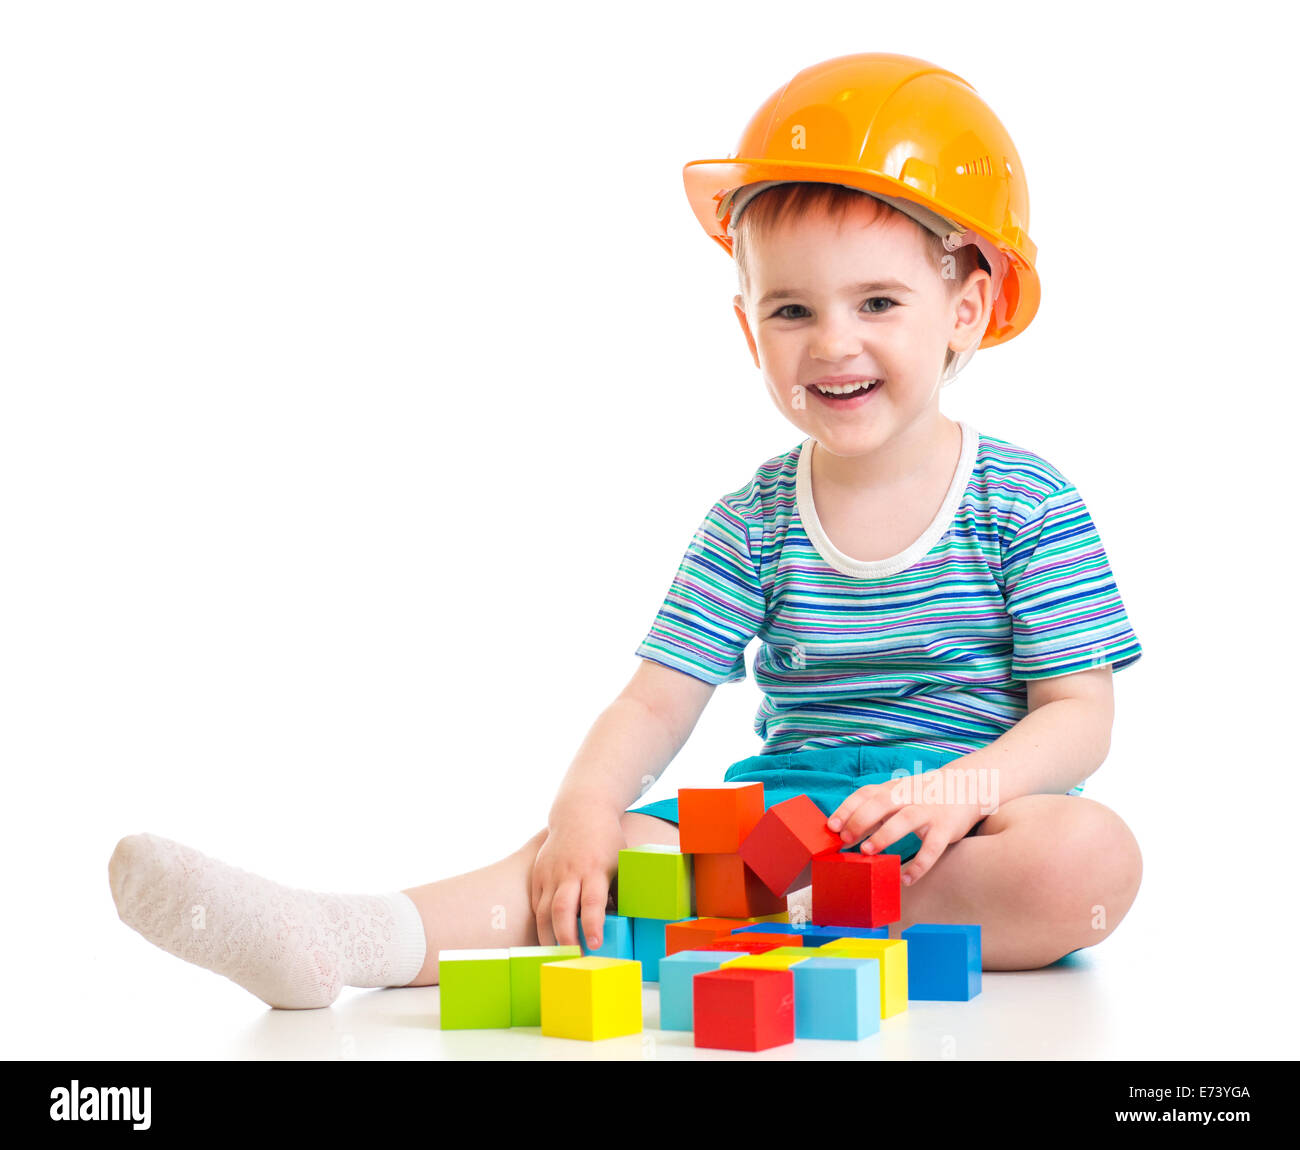 Kid boy in hard hat avec des blocs colorés Banque D'Images